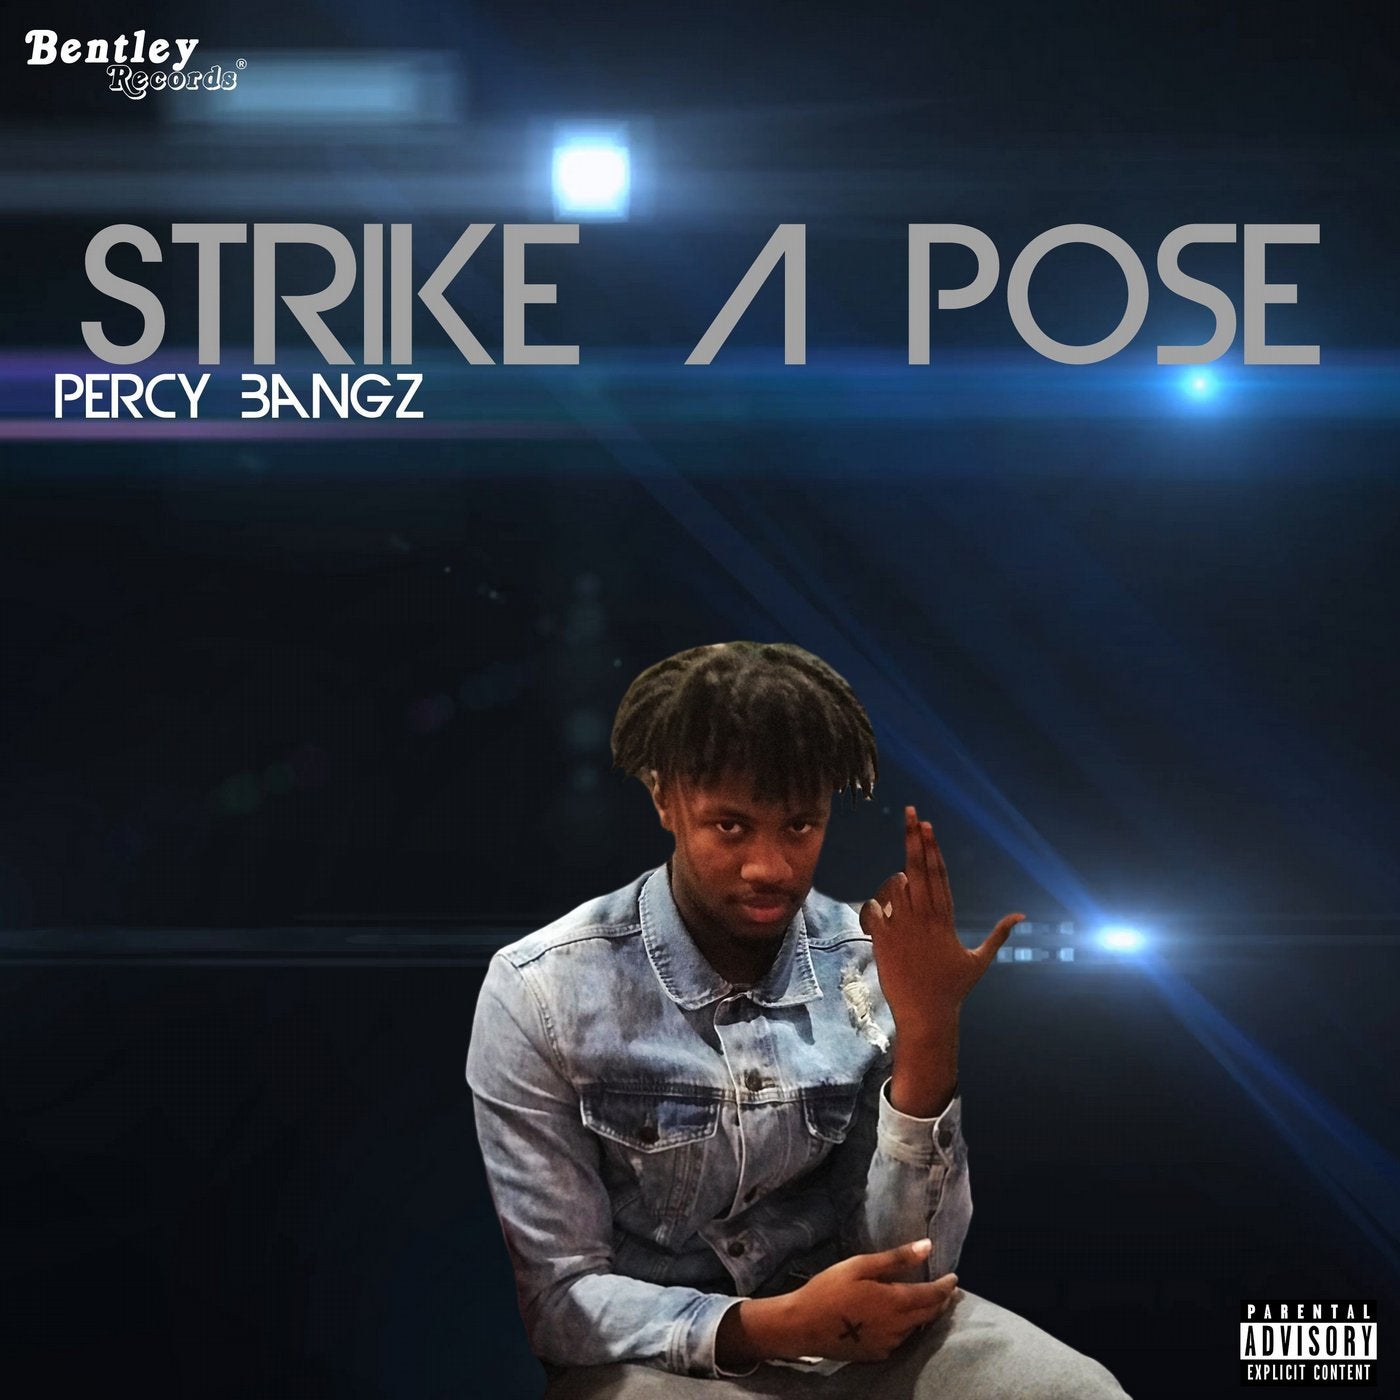 Strike a Pose